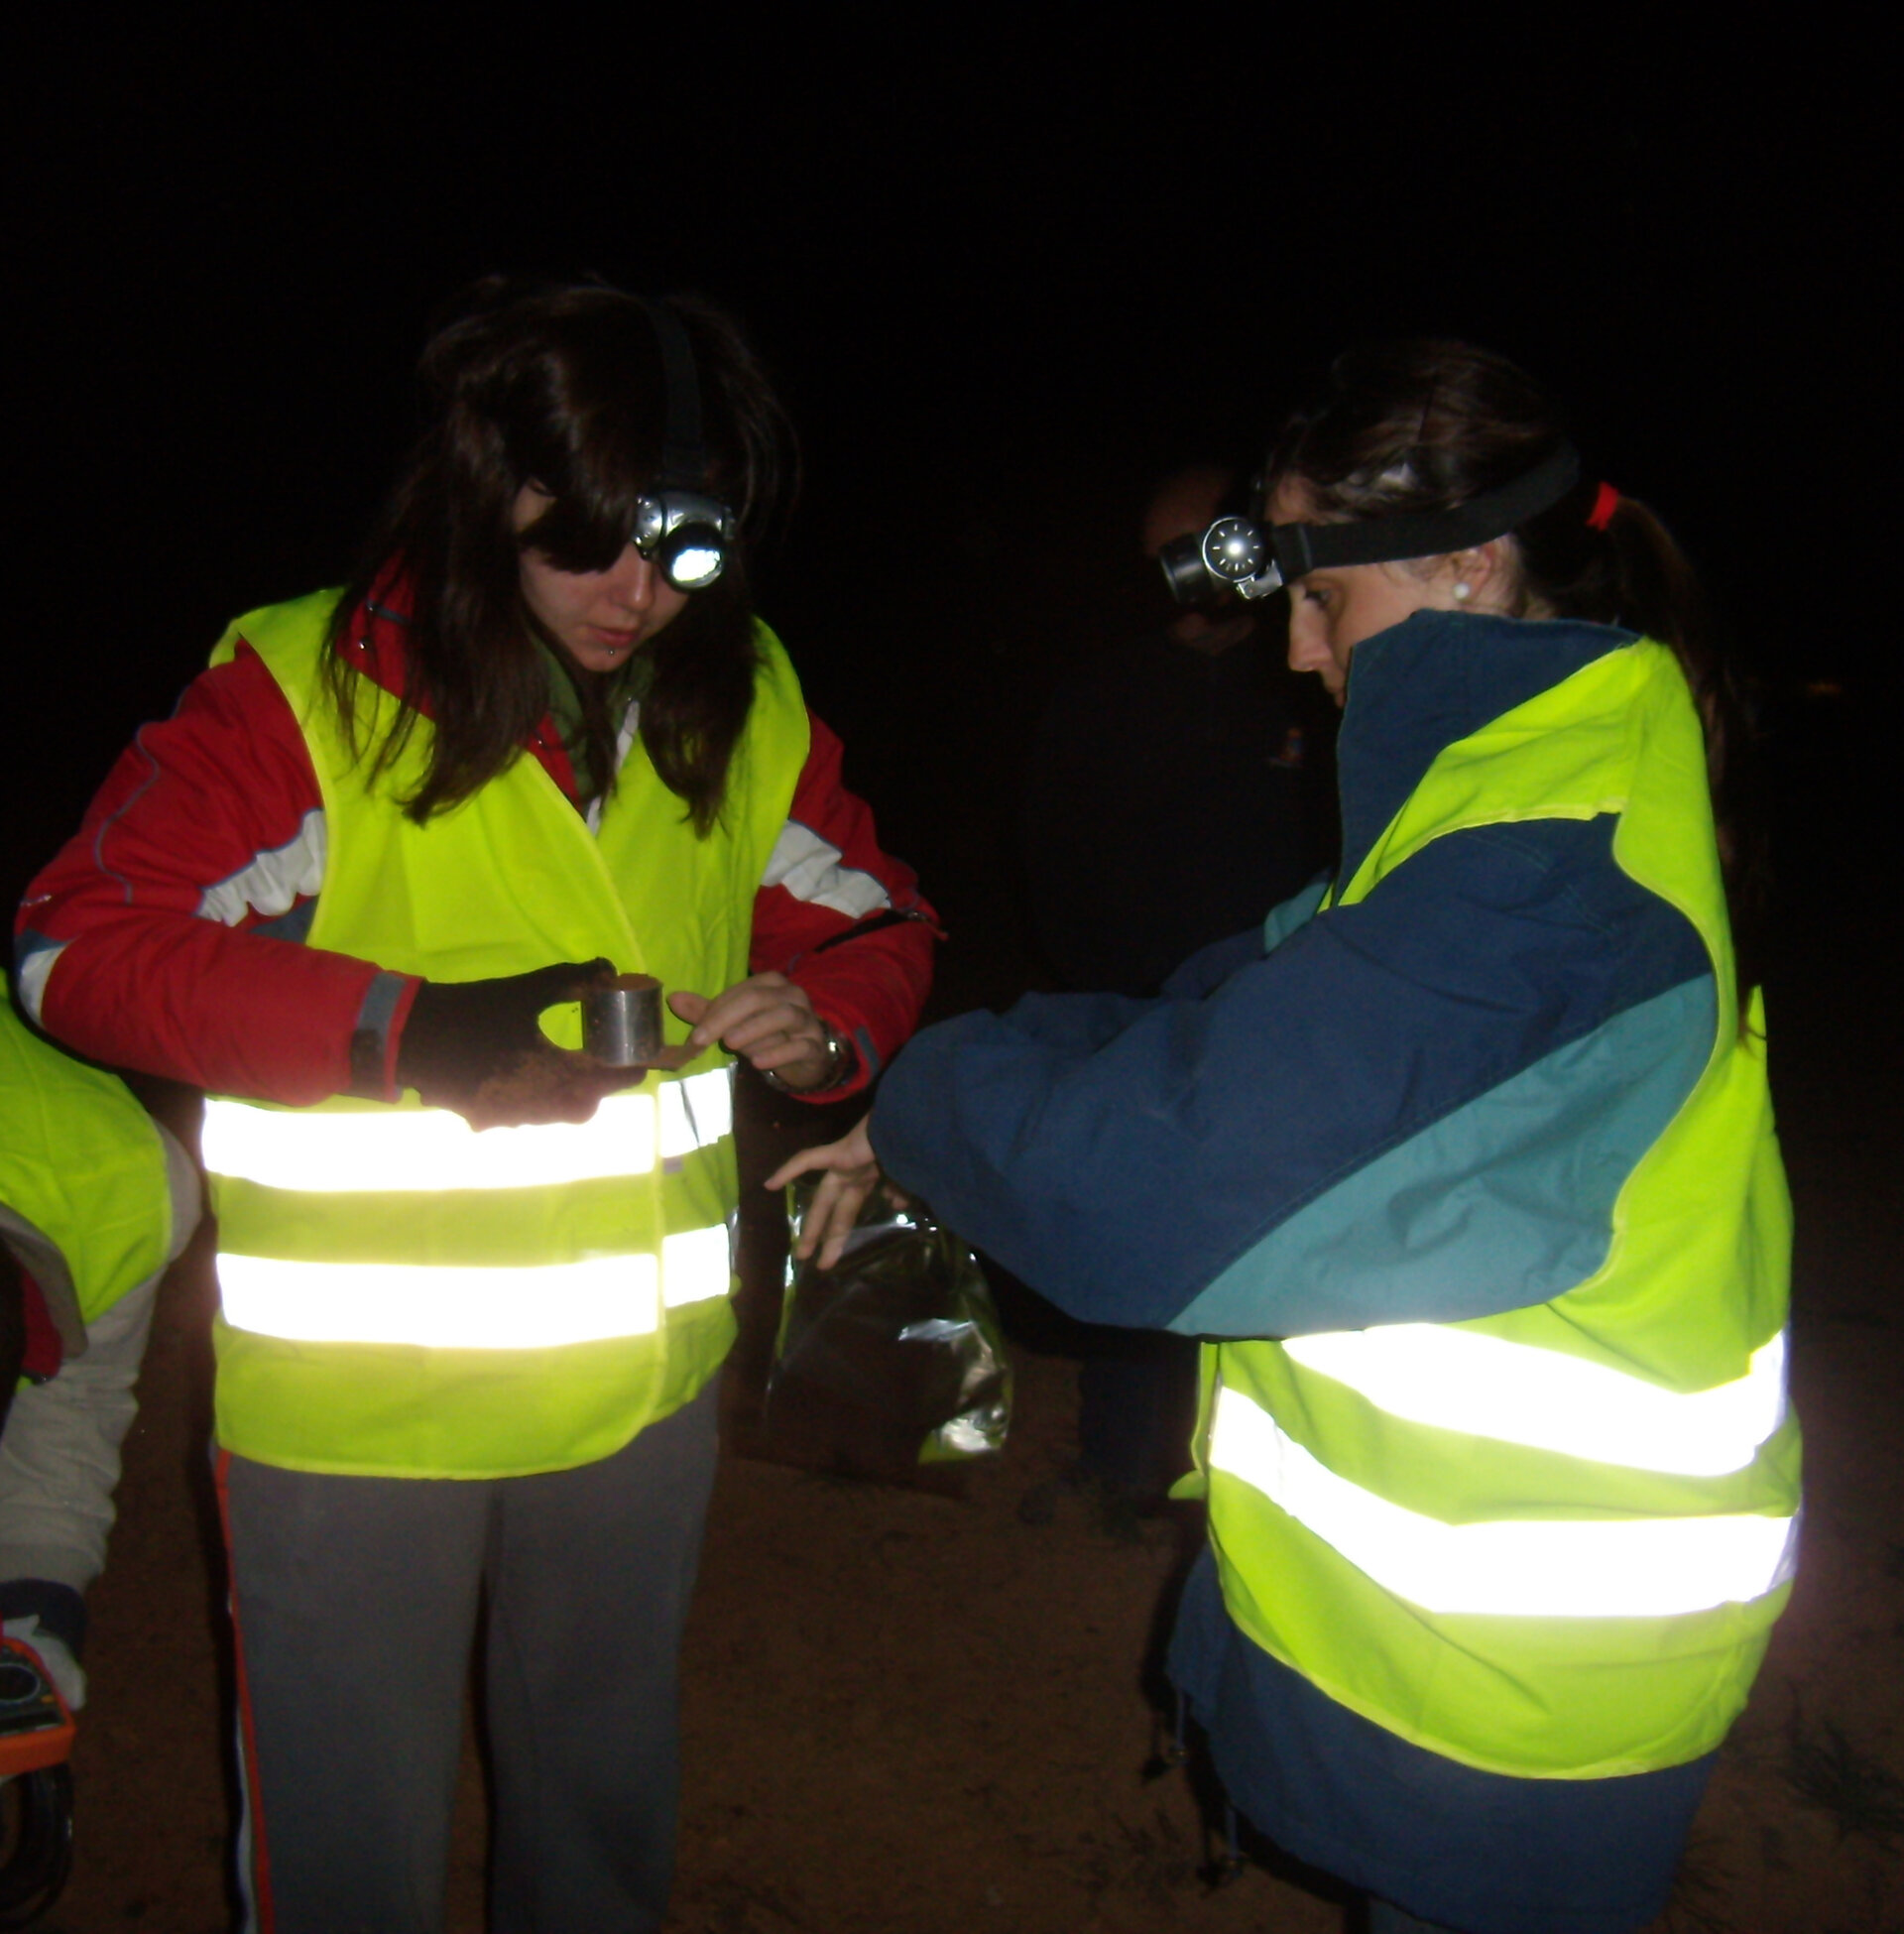 Taking soil samples at night